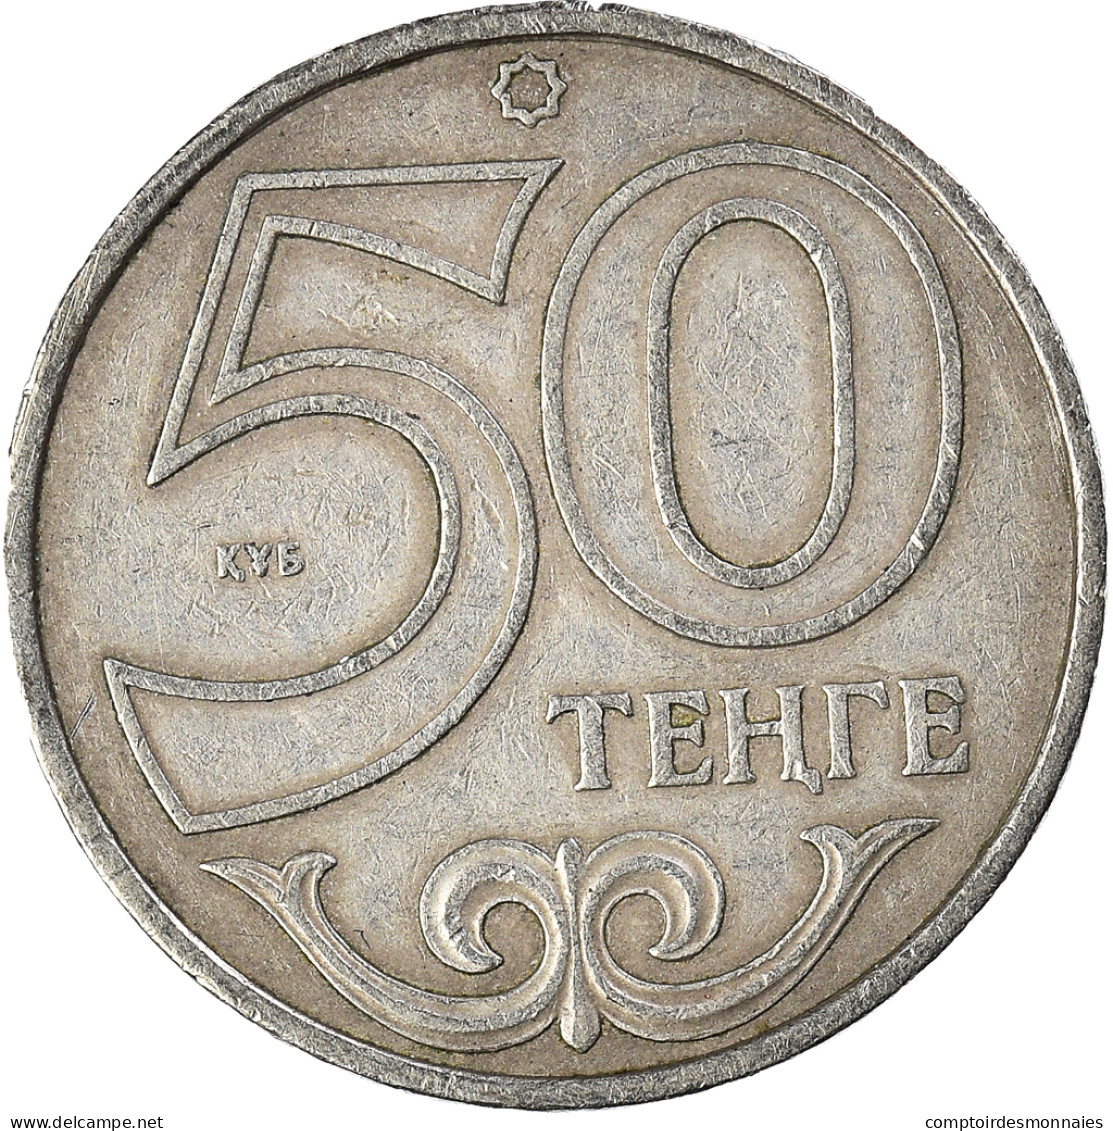 Monnaie, Kazakhstan, 50 Tenge, 2000 - Kazajstán